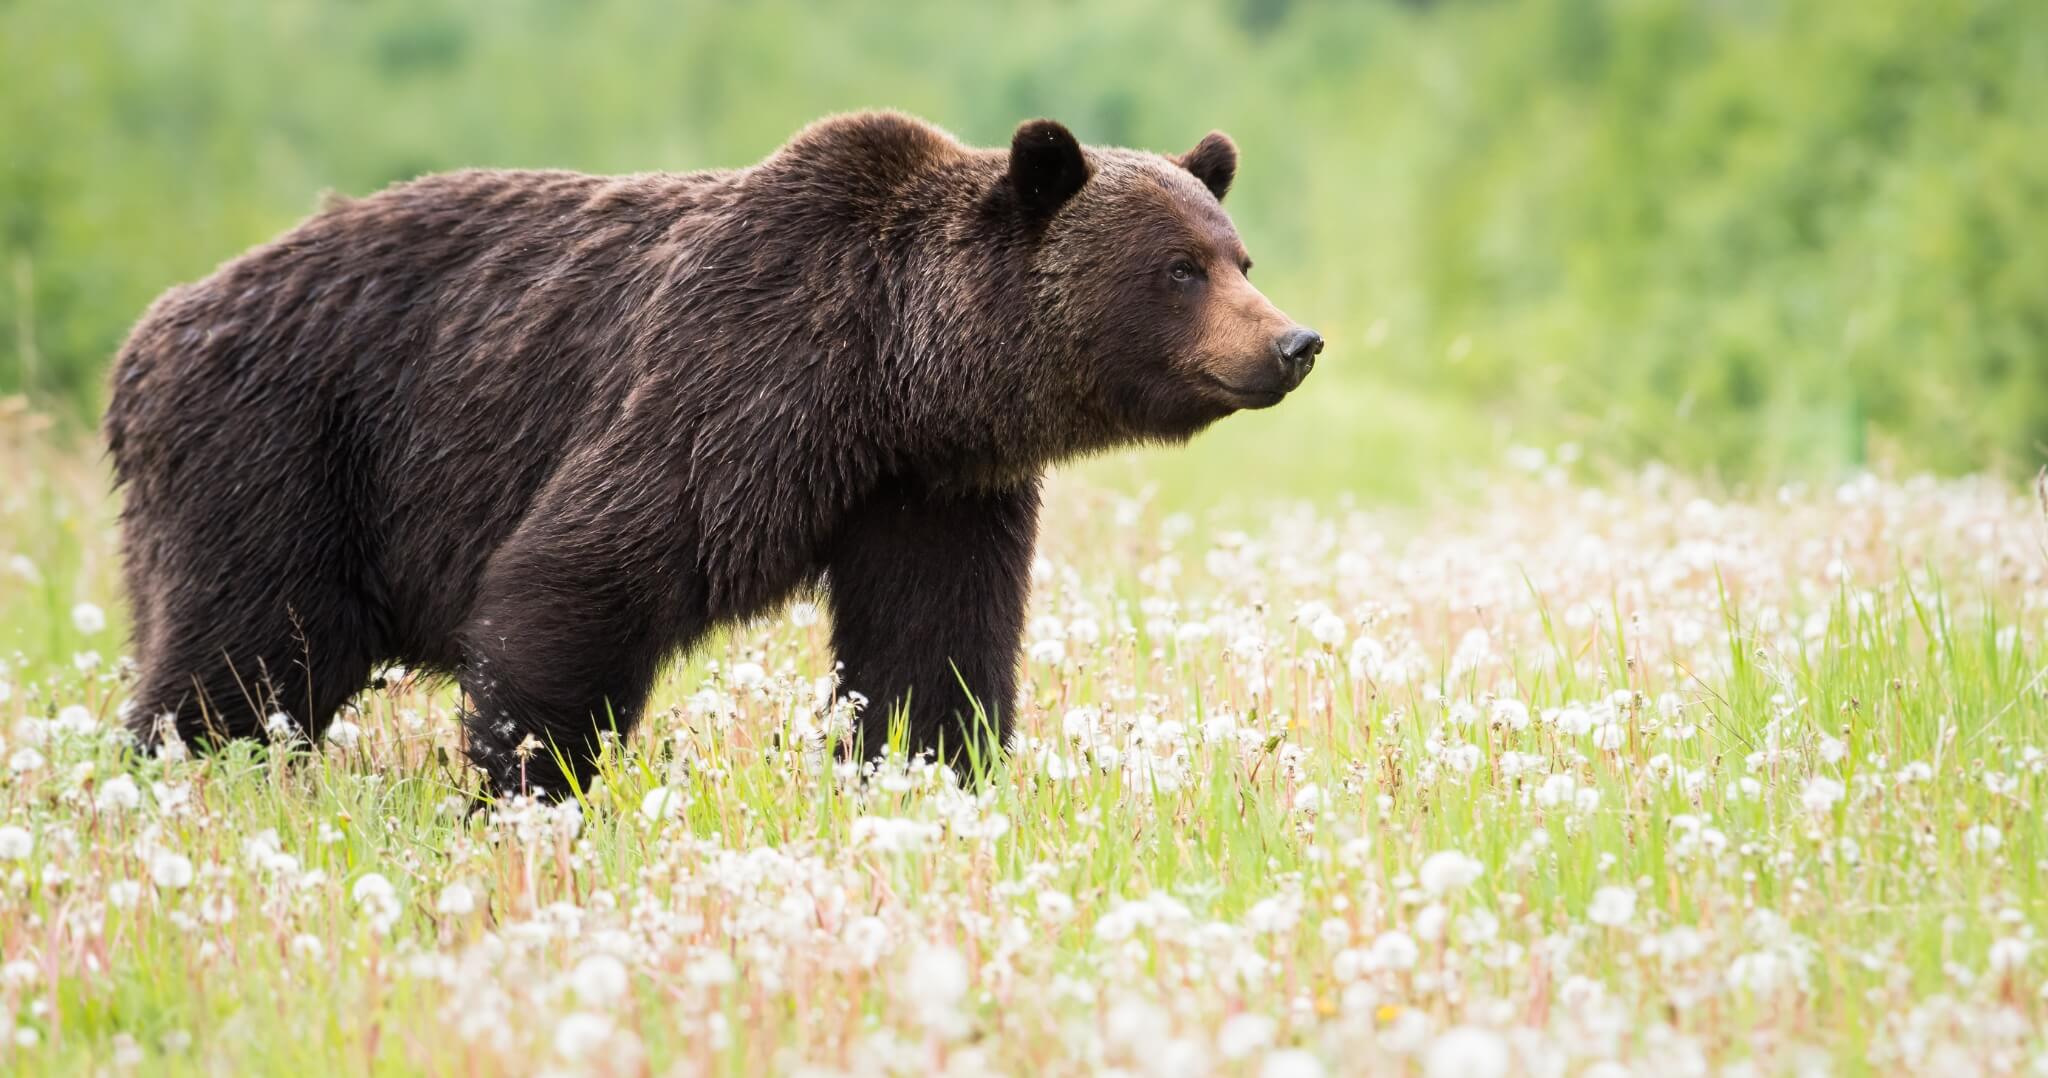 V katastrálnych územiach obcí Rišňovce a Rumanová bol zaznamenaný pohyb medveďa hnedého